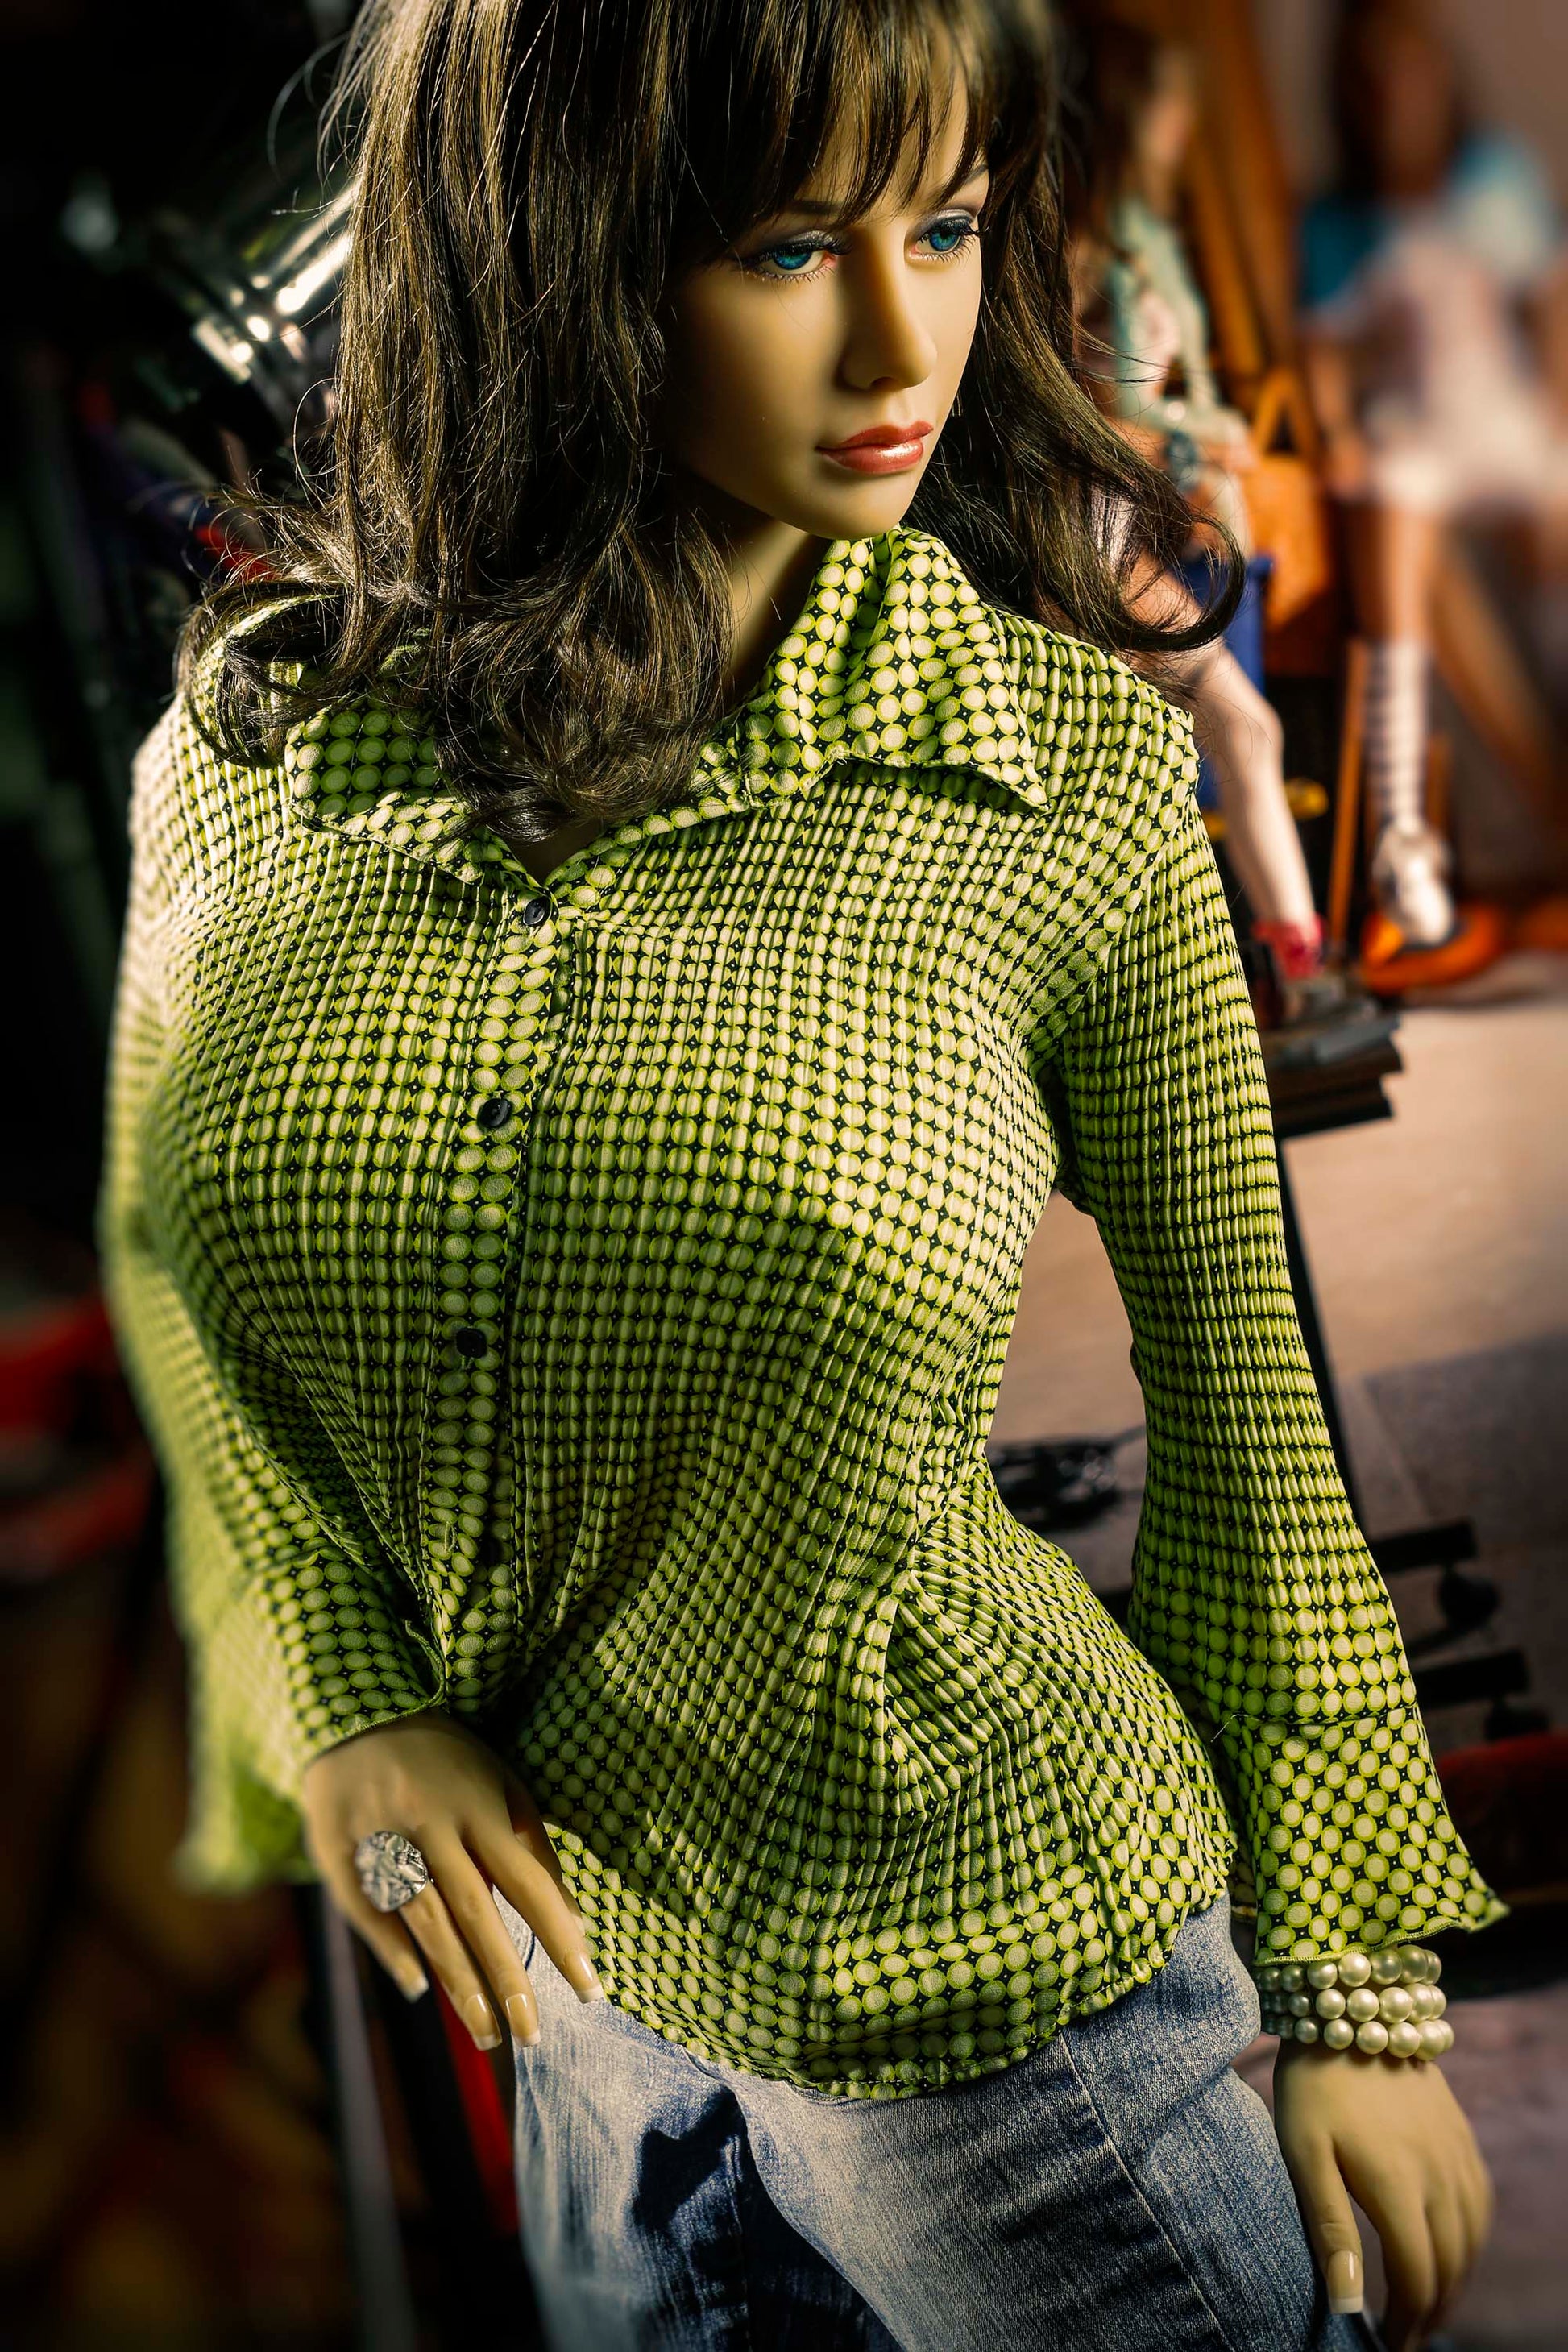 JY Doll - Realistic Sex Doll - 5ft 2in (158cm) - Samantha - Love Dolls 4U